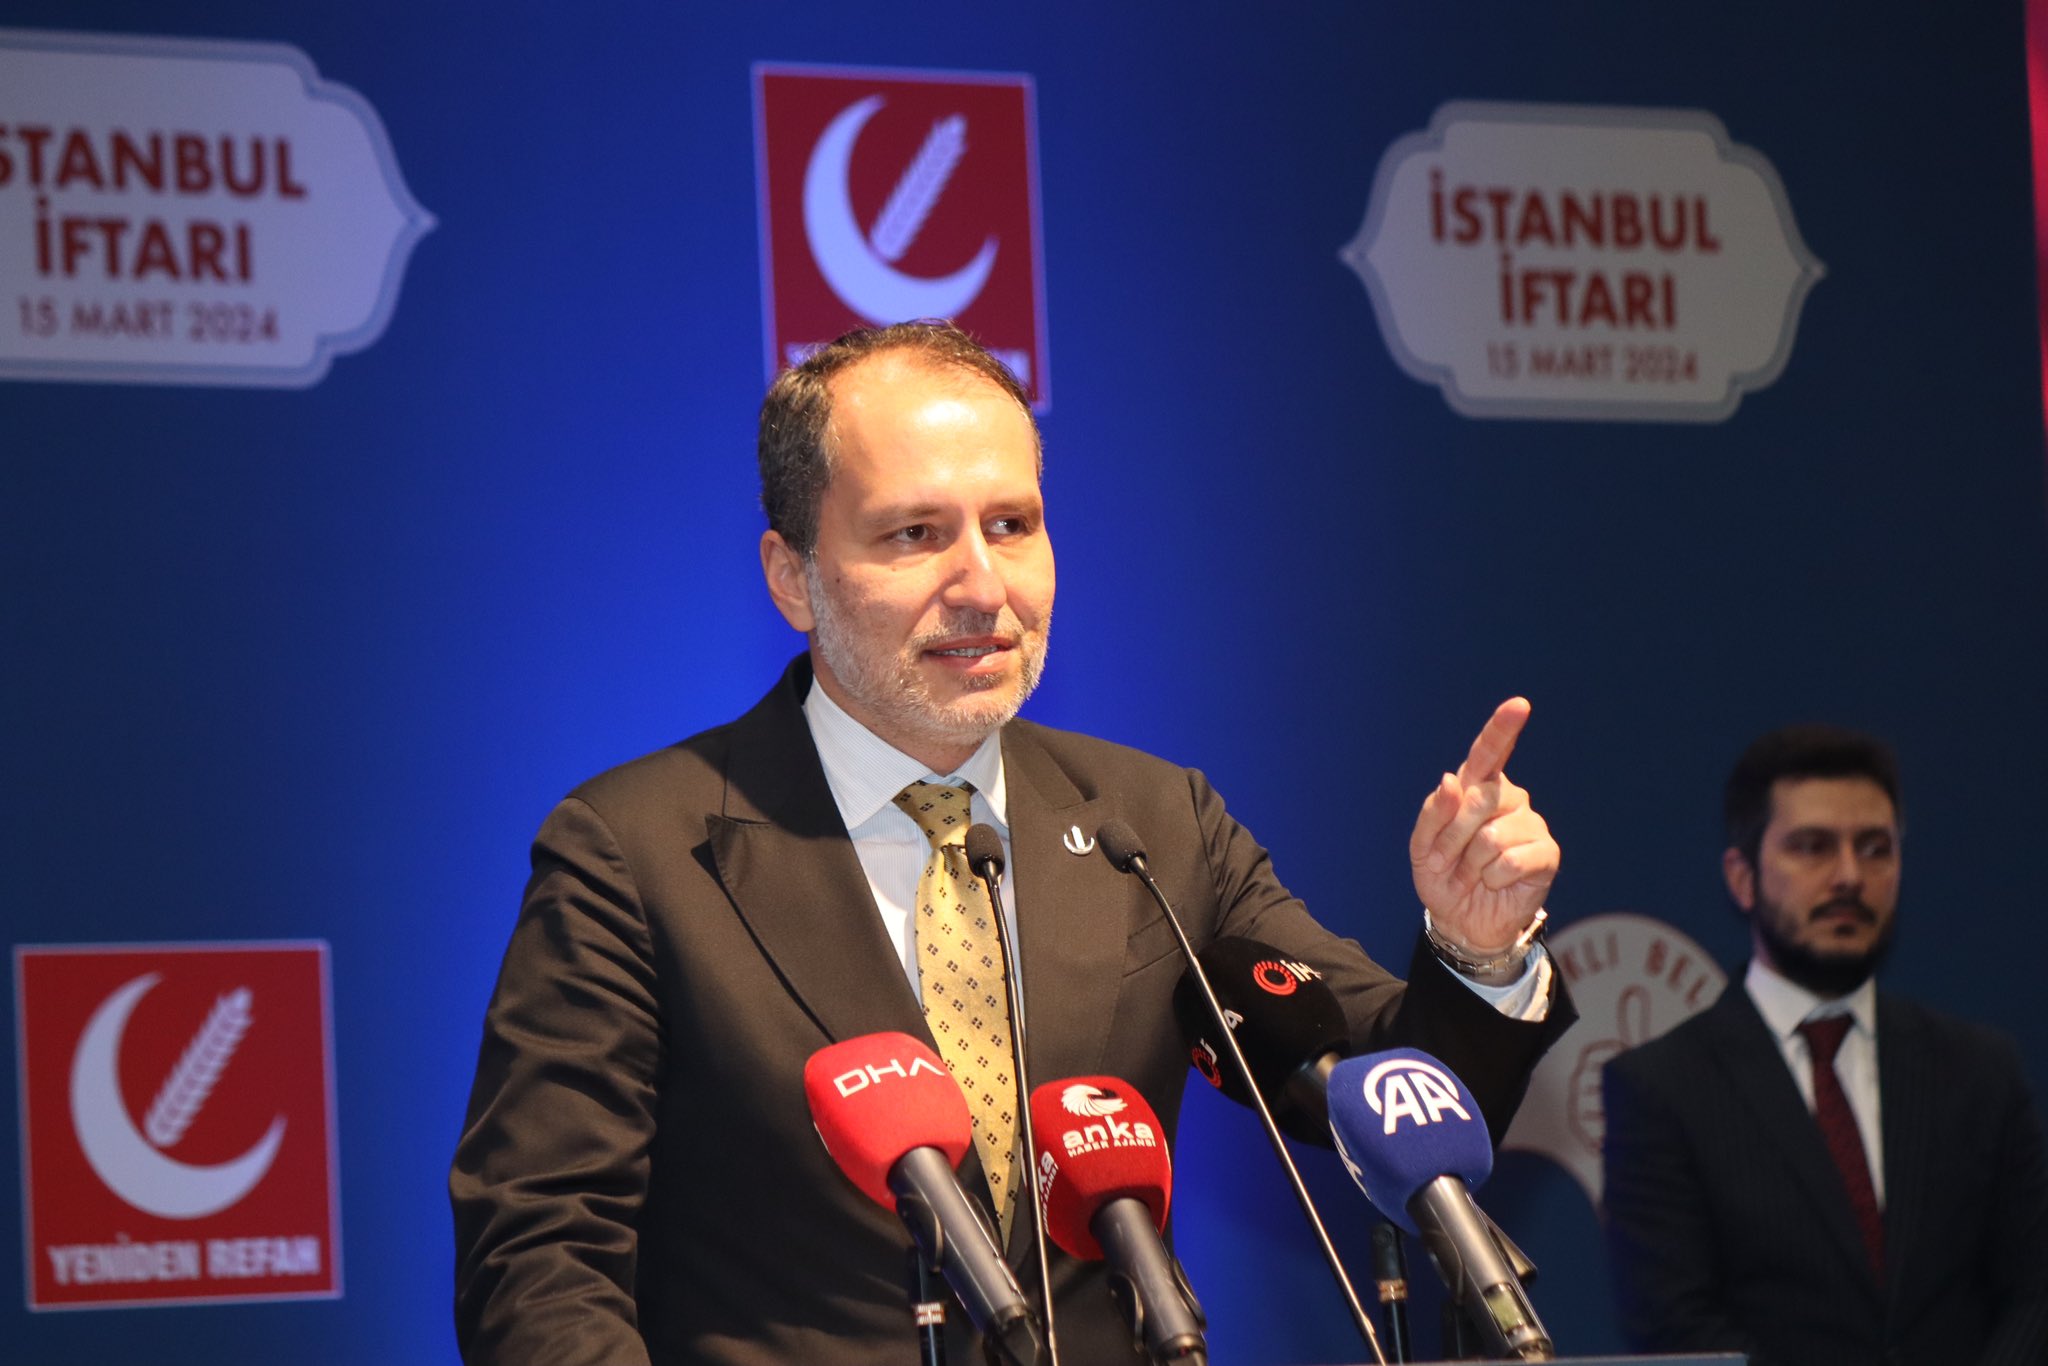 ‘Yerel seçime Türkiye’nin en büyük üçüncü partisi olarak gireceğiz’